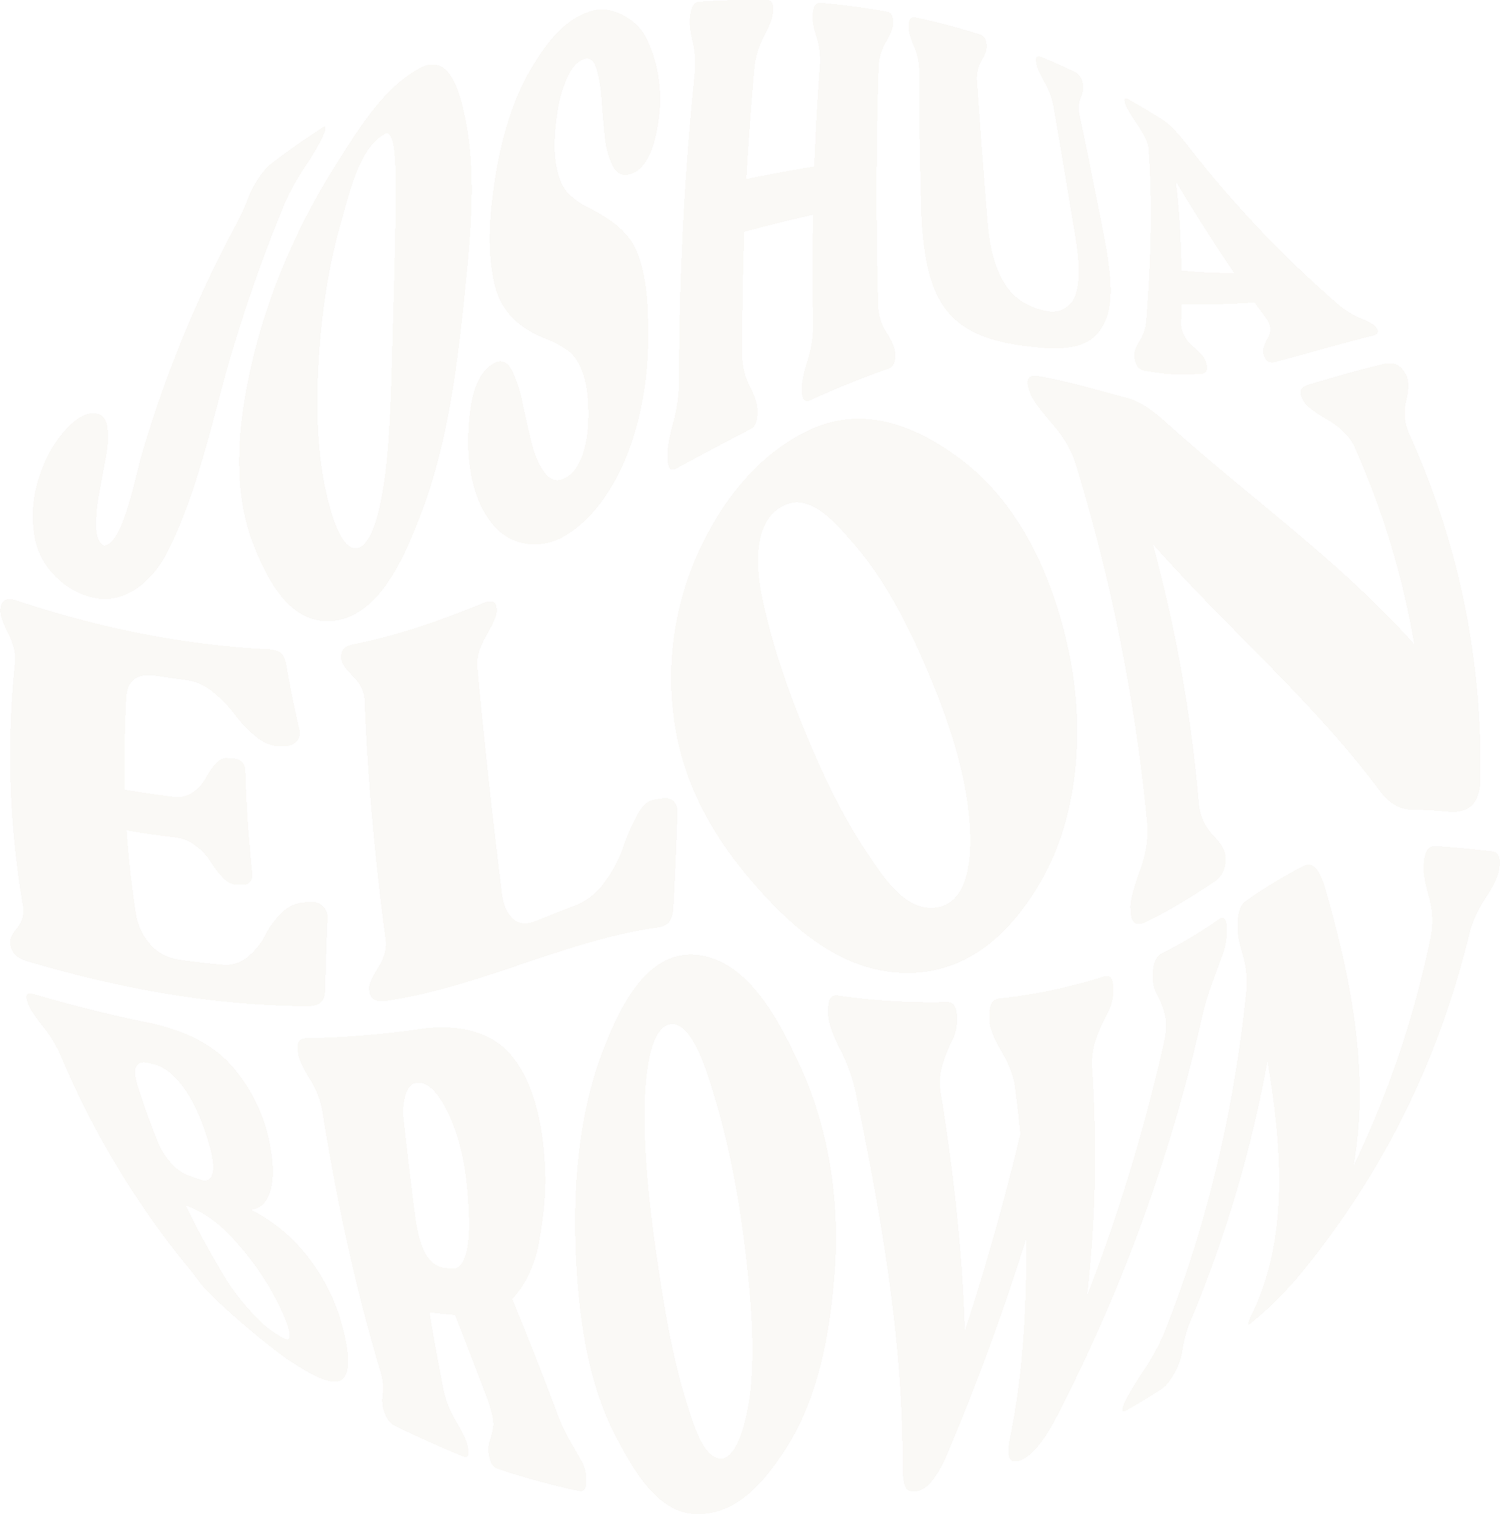 Joshua Elon Brown